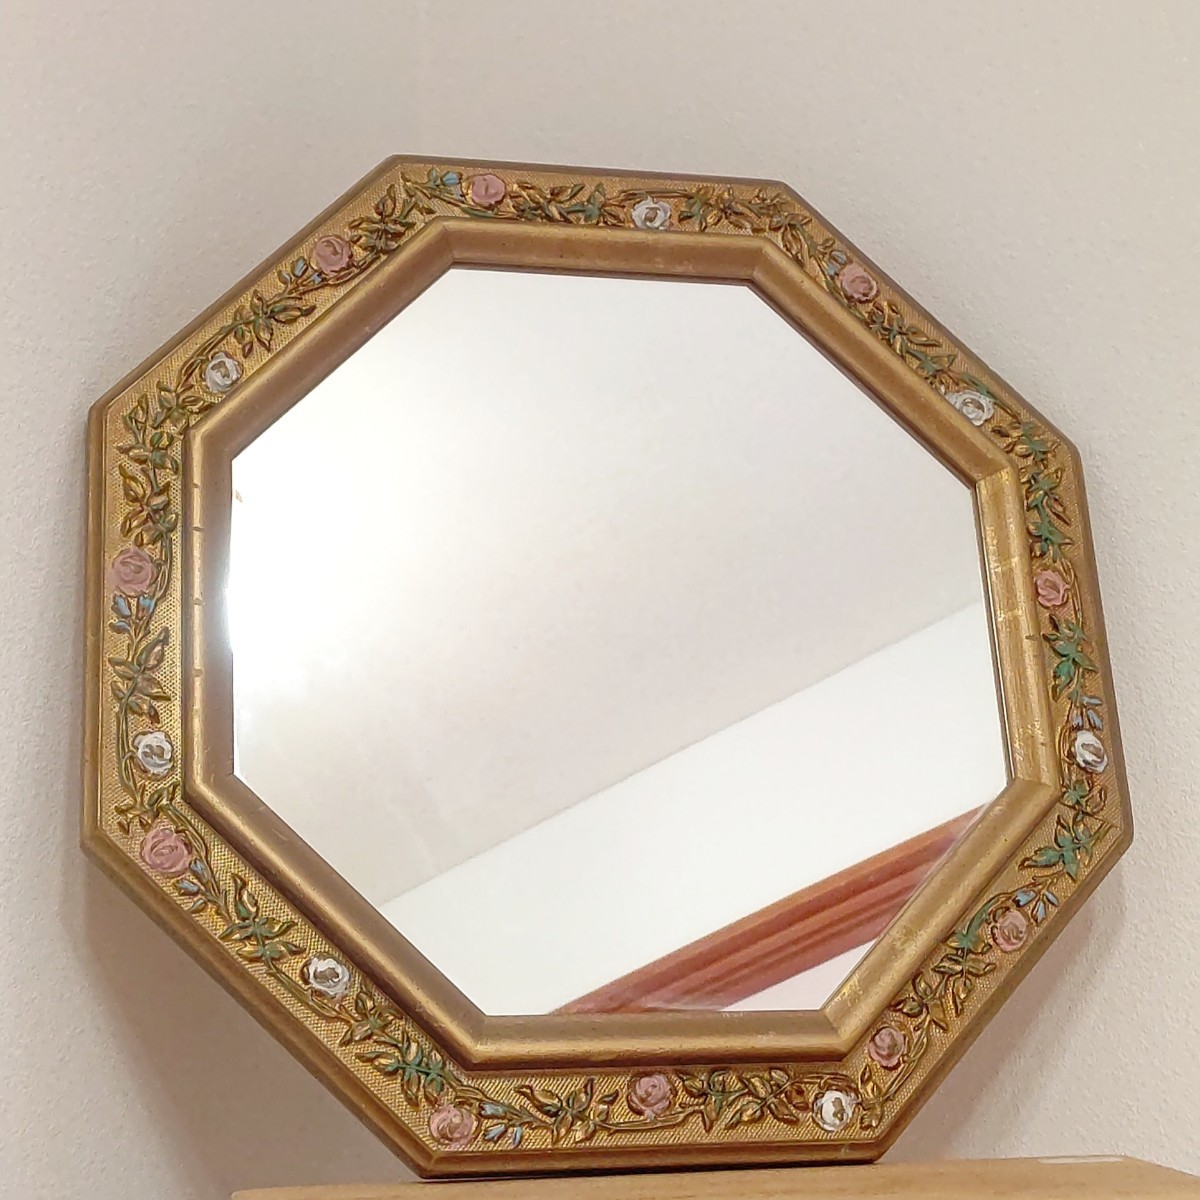 イタリア製 アンティーク調 八角ミラー 壁掛け 鏡 レトロ 花模様 